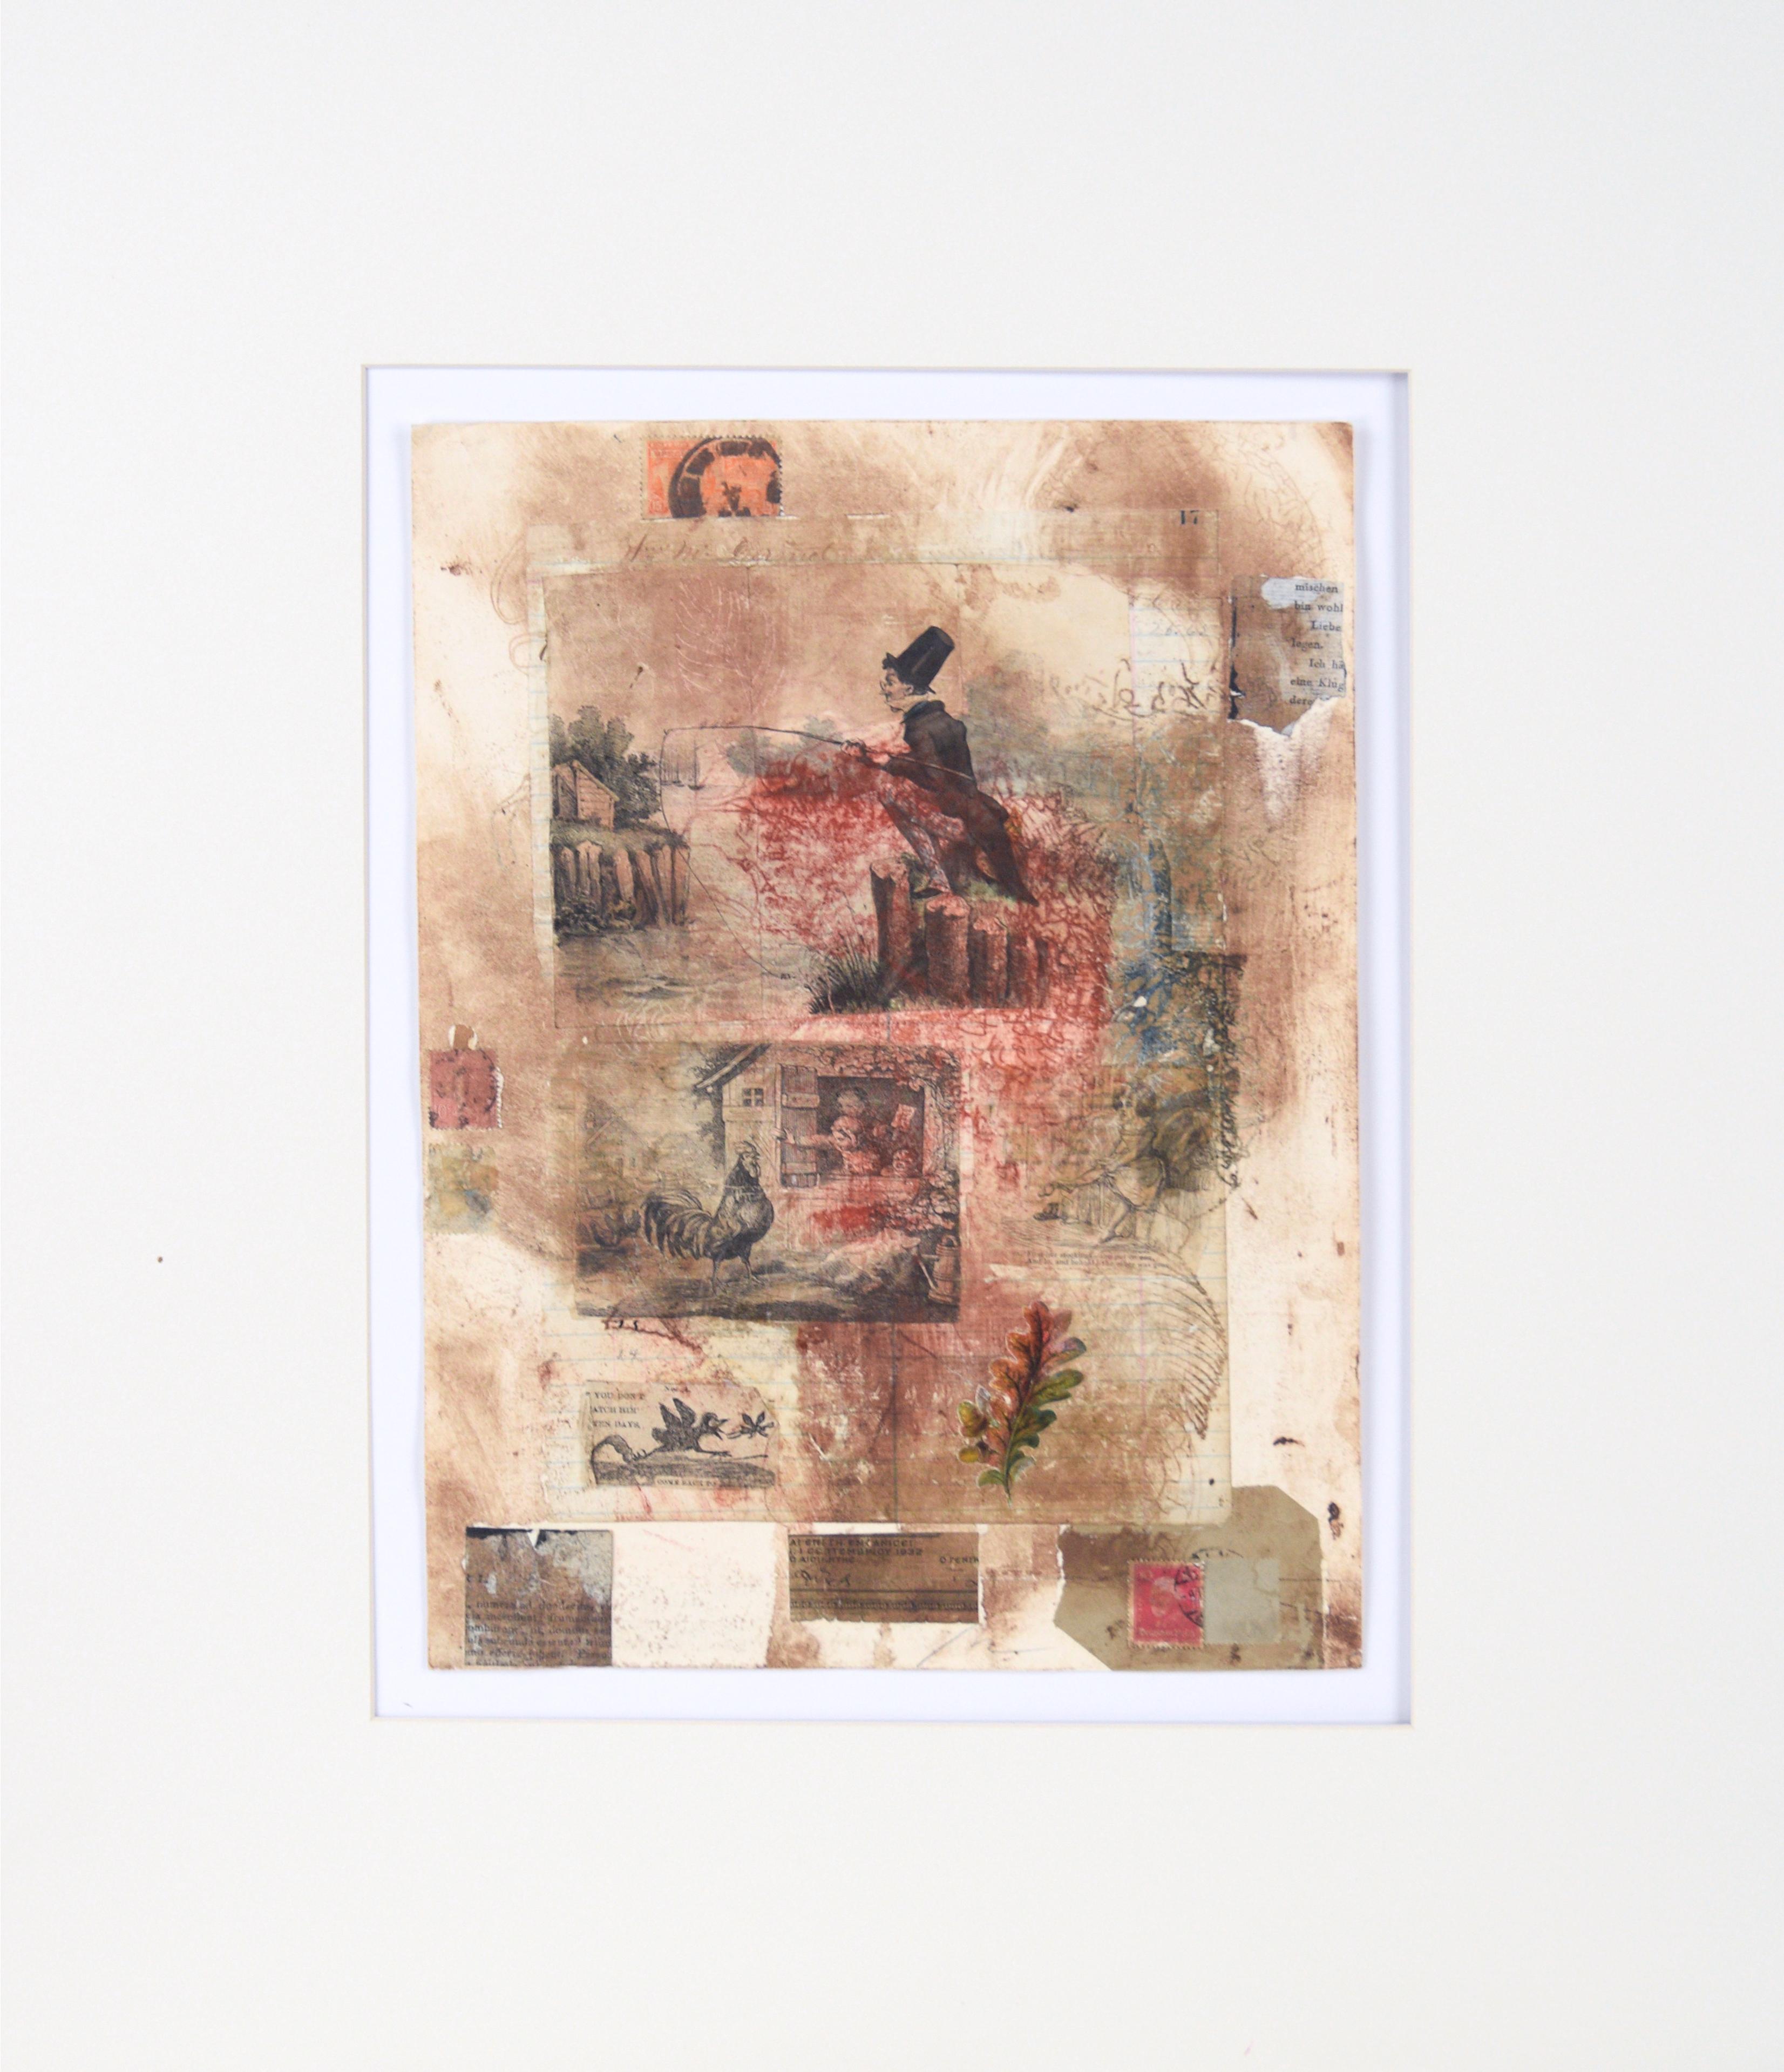 "Mischen Bin Wohl" - Chine Colle Monoprint with Collage